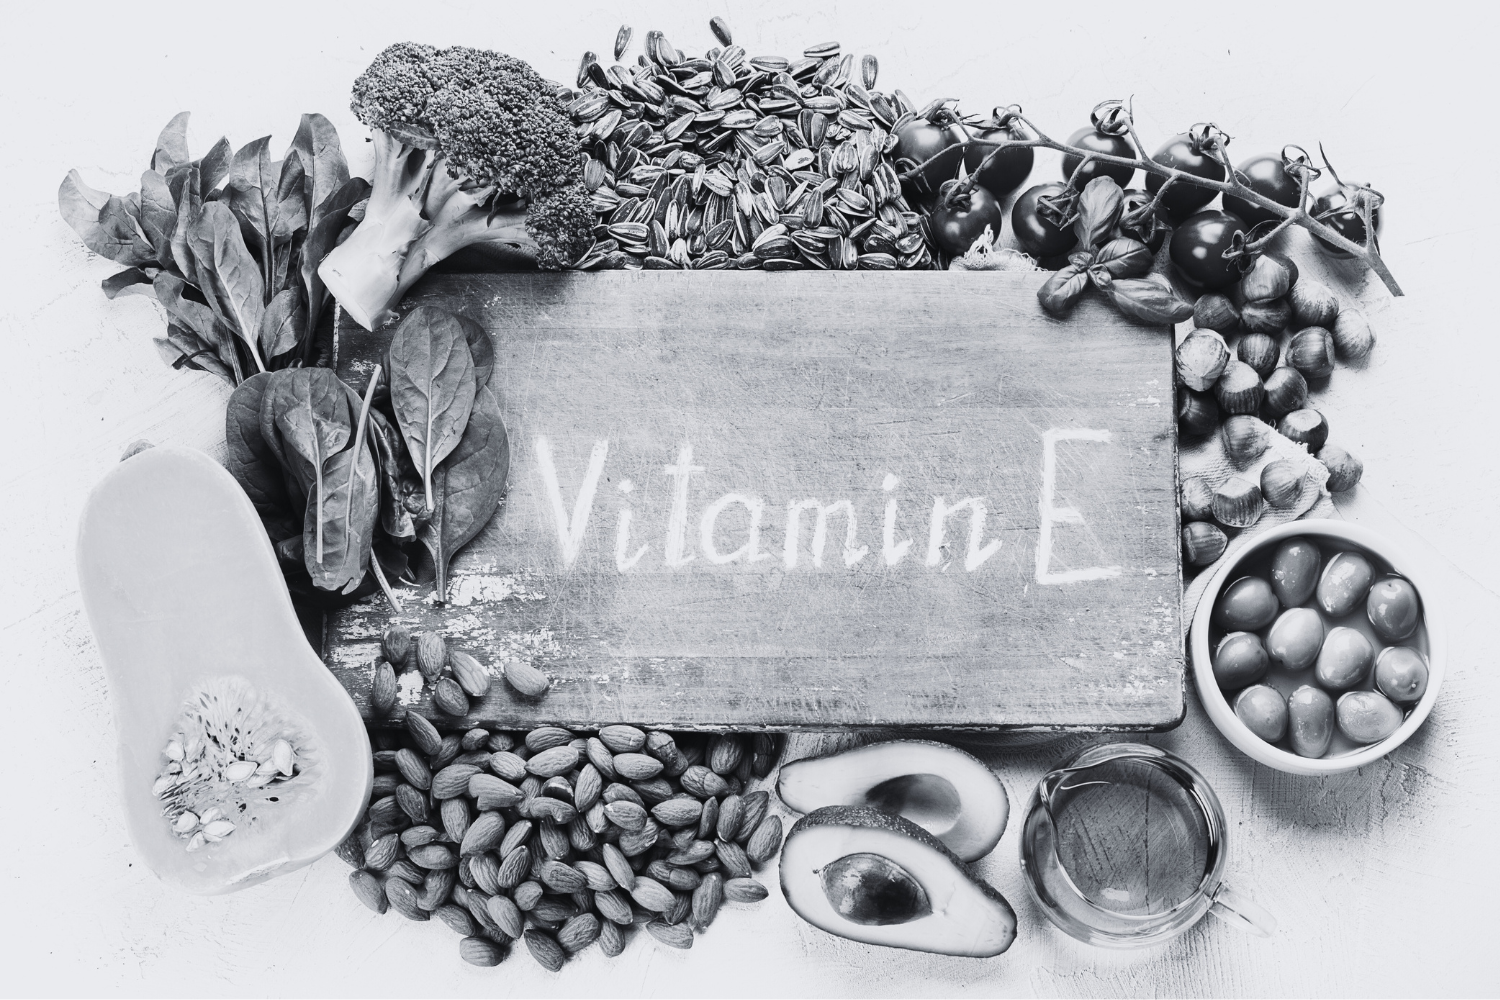 vitamin e skincare - vitamin e in skin care - vitamin c skin products